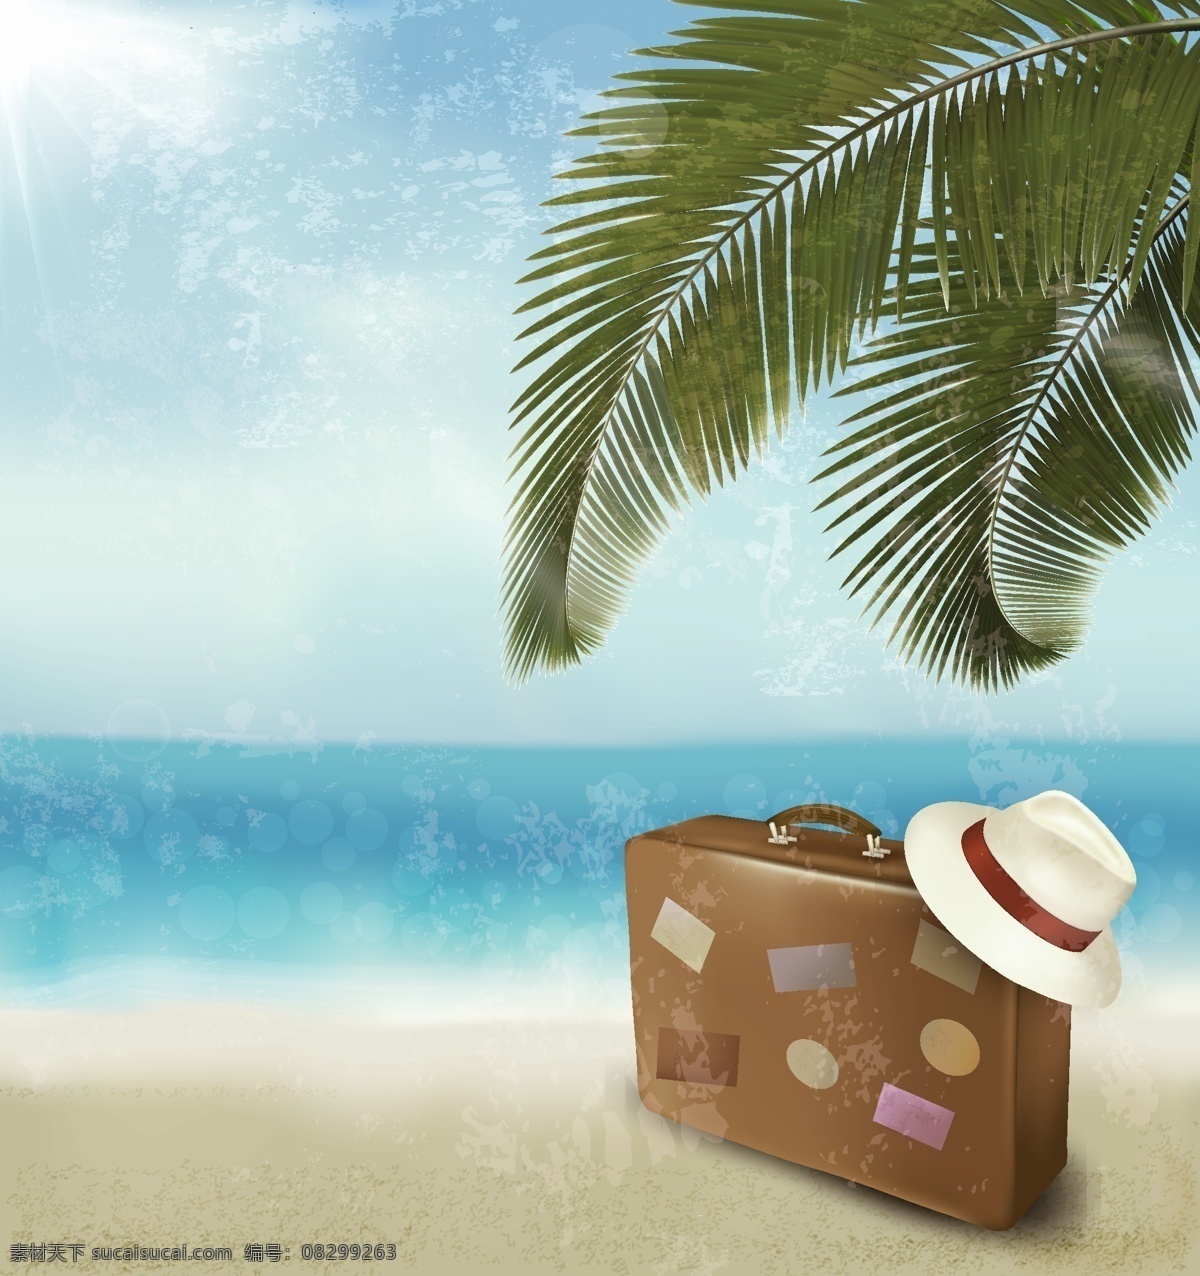 矢量 卡通 旅游度假 夏日 海边 背景 草帽 度假 复古 海洋 旅行箱 旅游 沙滩 手绘 童趣